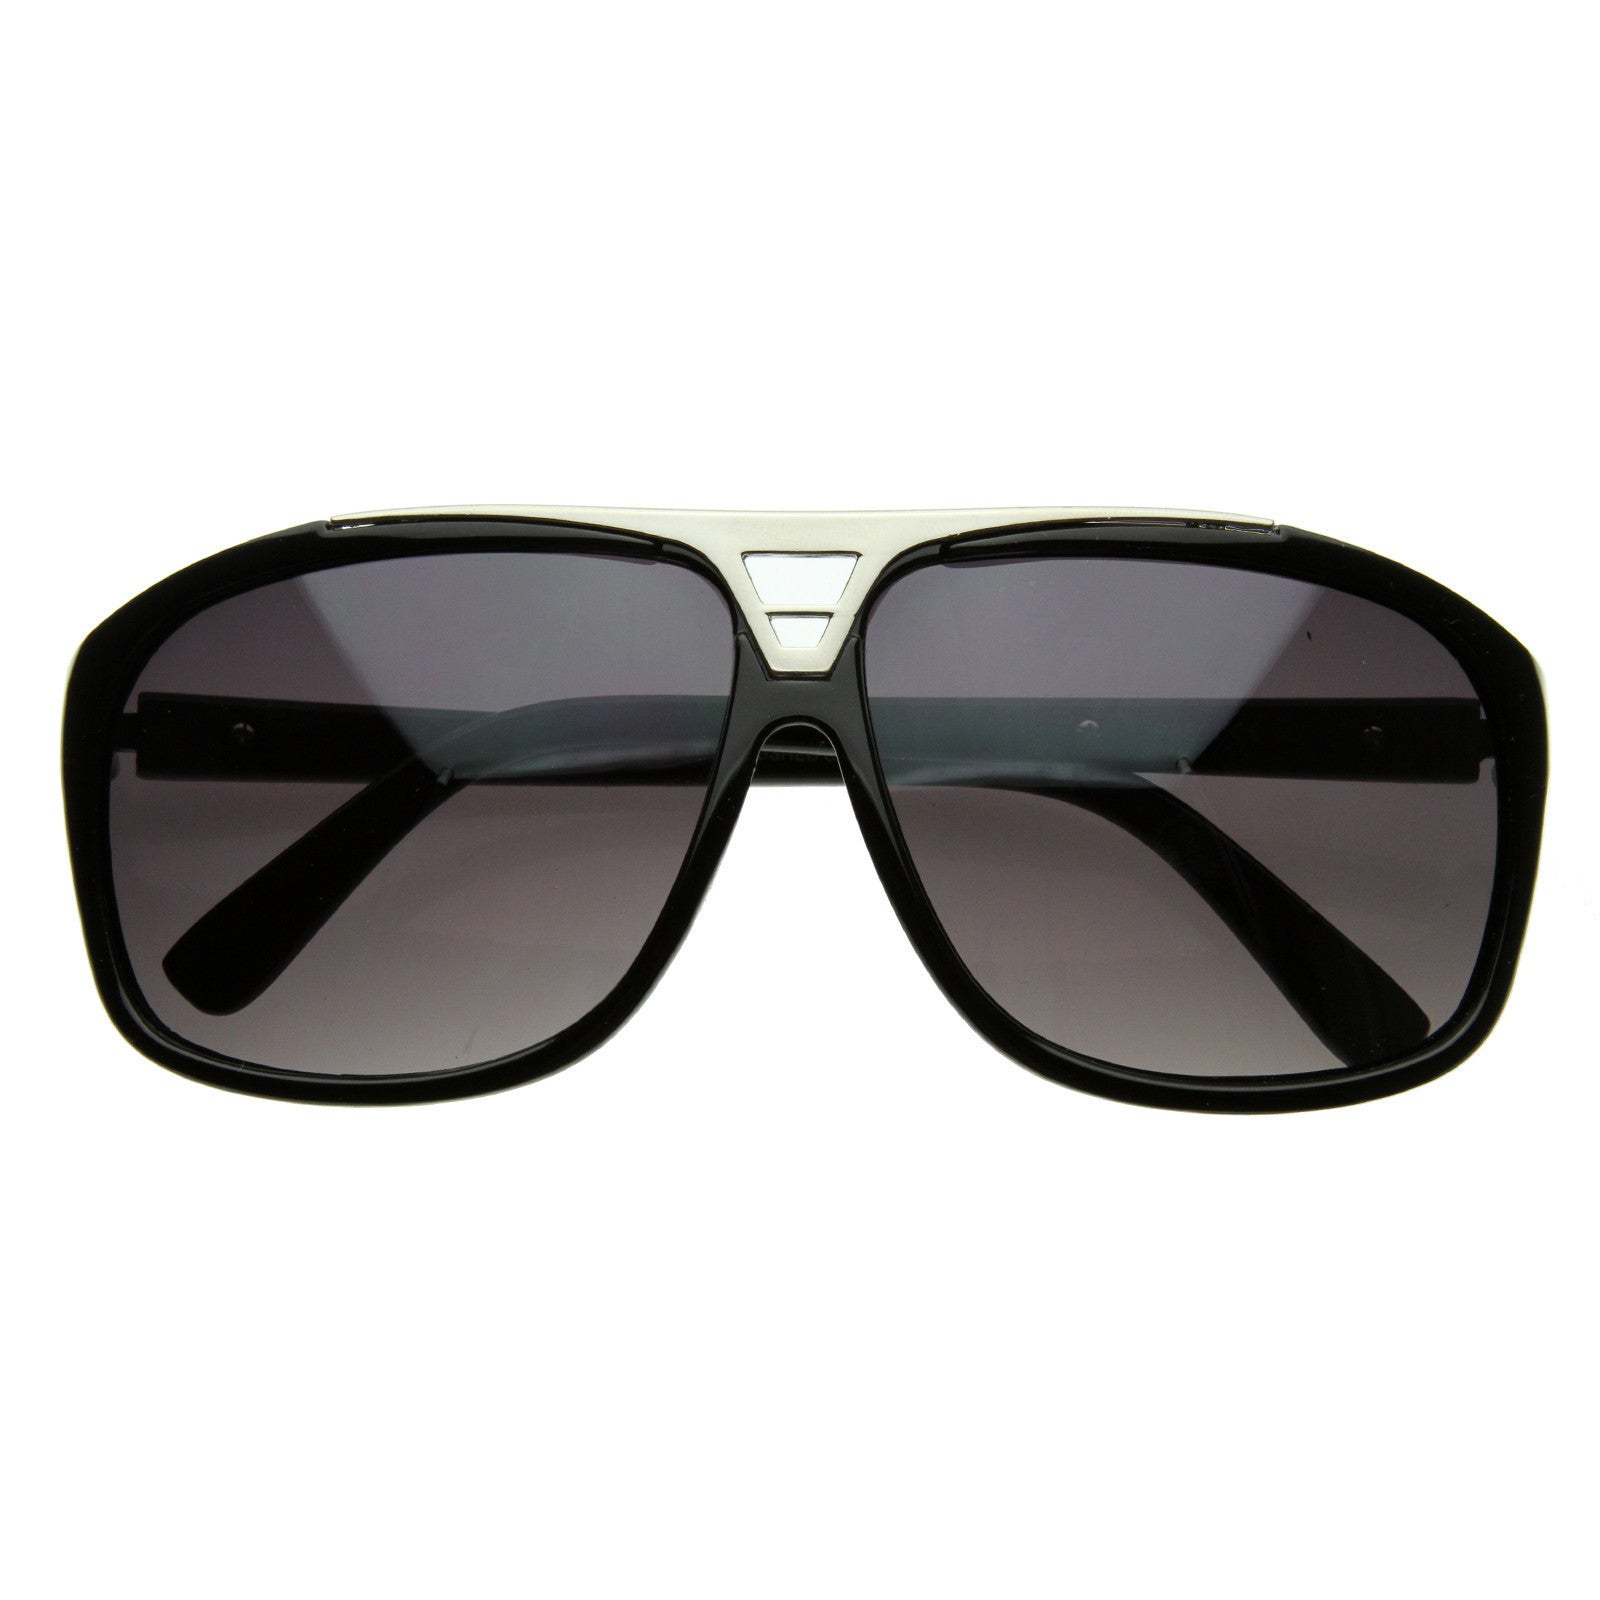 Sydney Black Out Optical | Best Designer Eyeglass Frames | Established